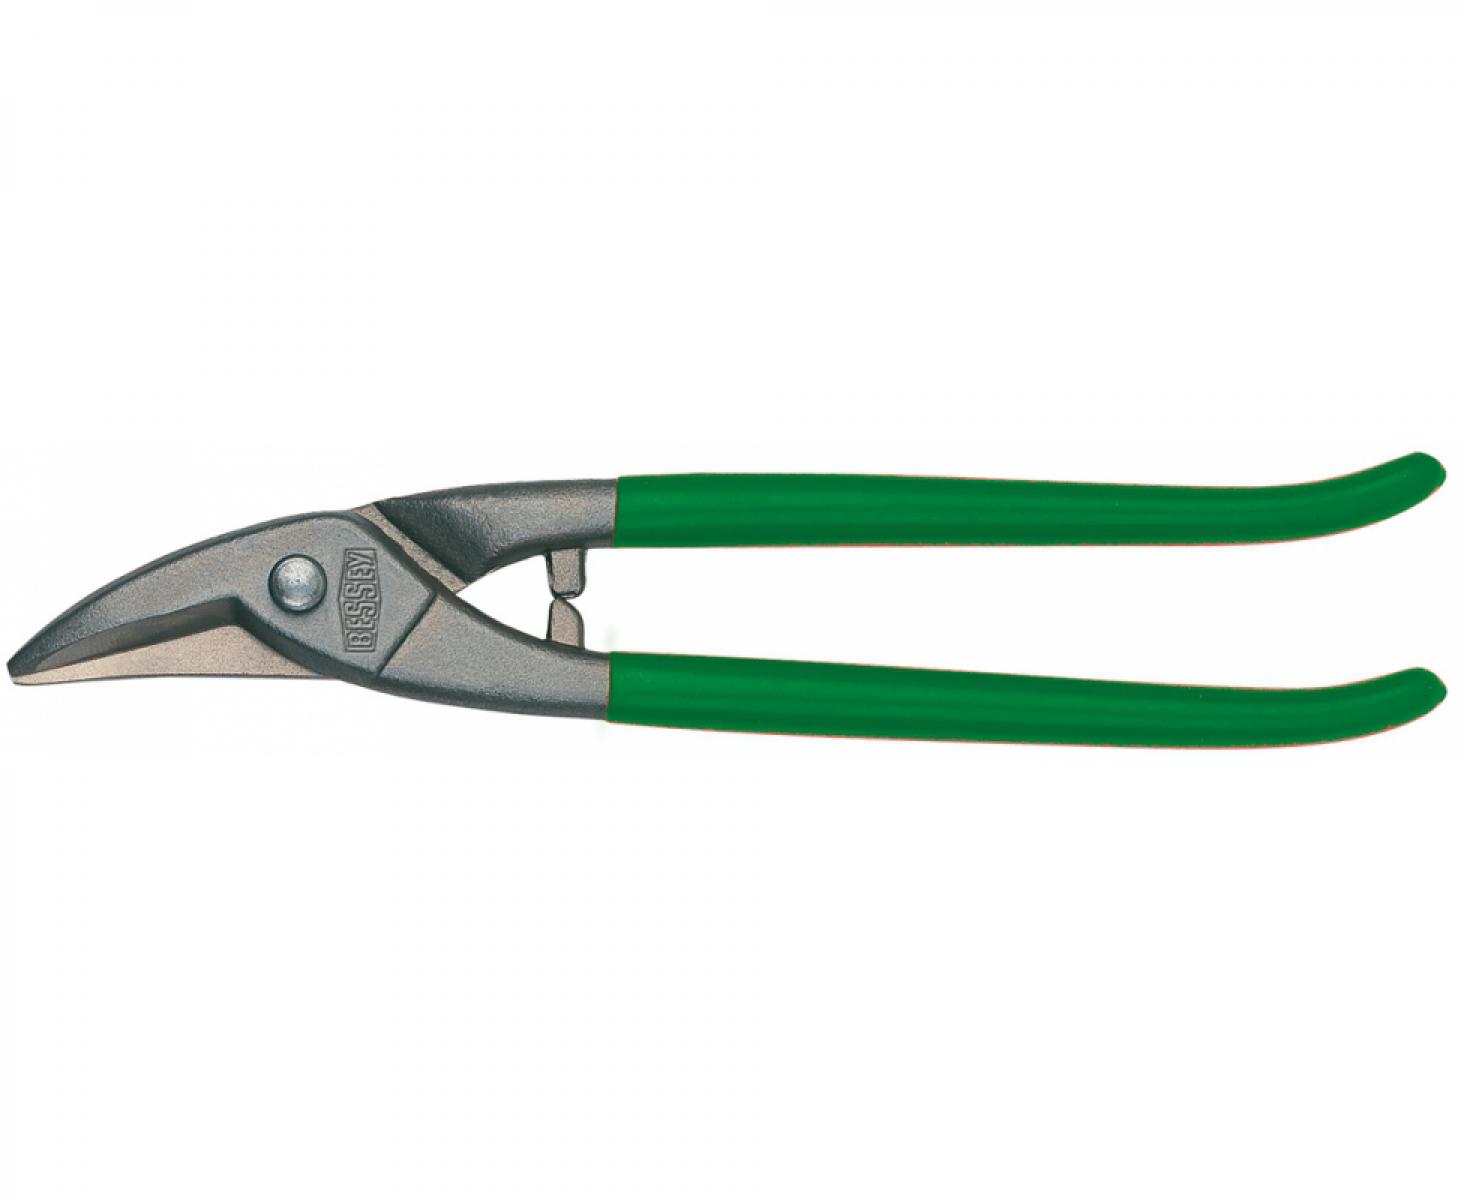 Ножницы для прорезания отверстий в листовом металле Erdi ER-D107-225-SB праворежущие